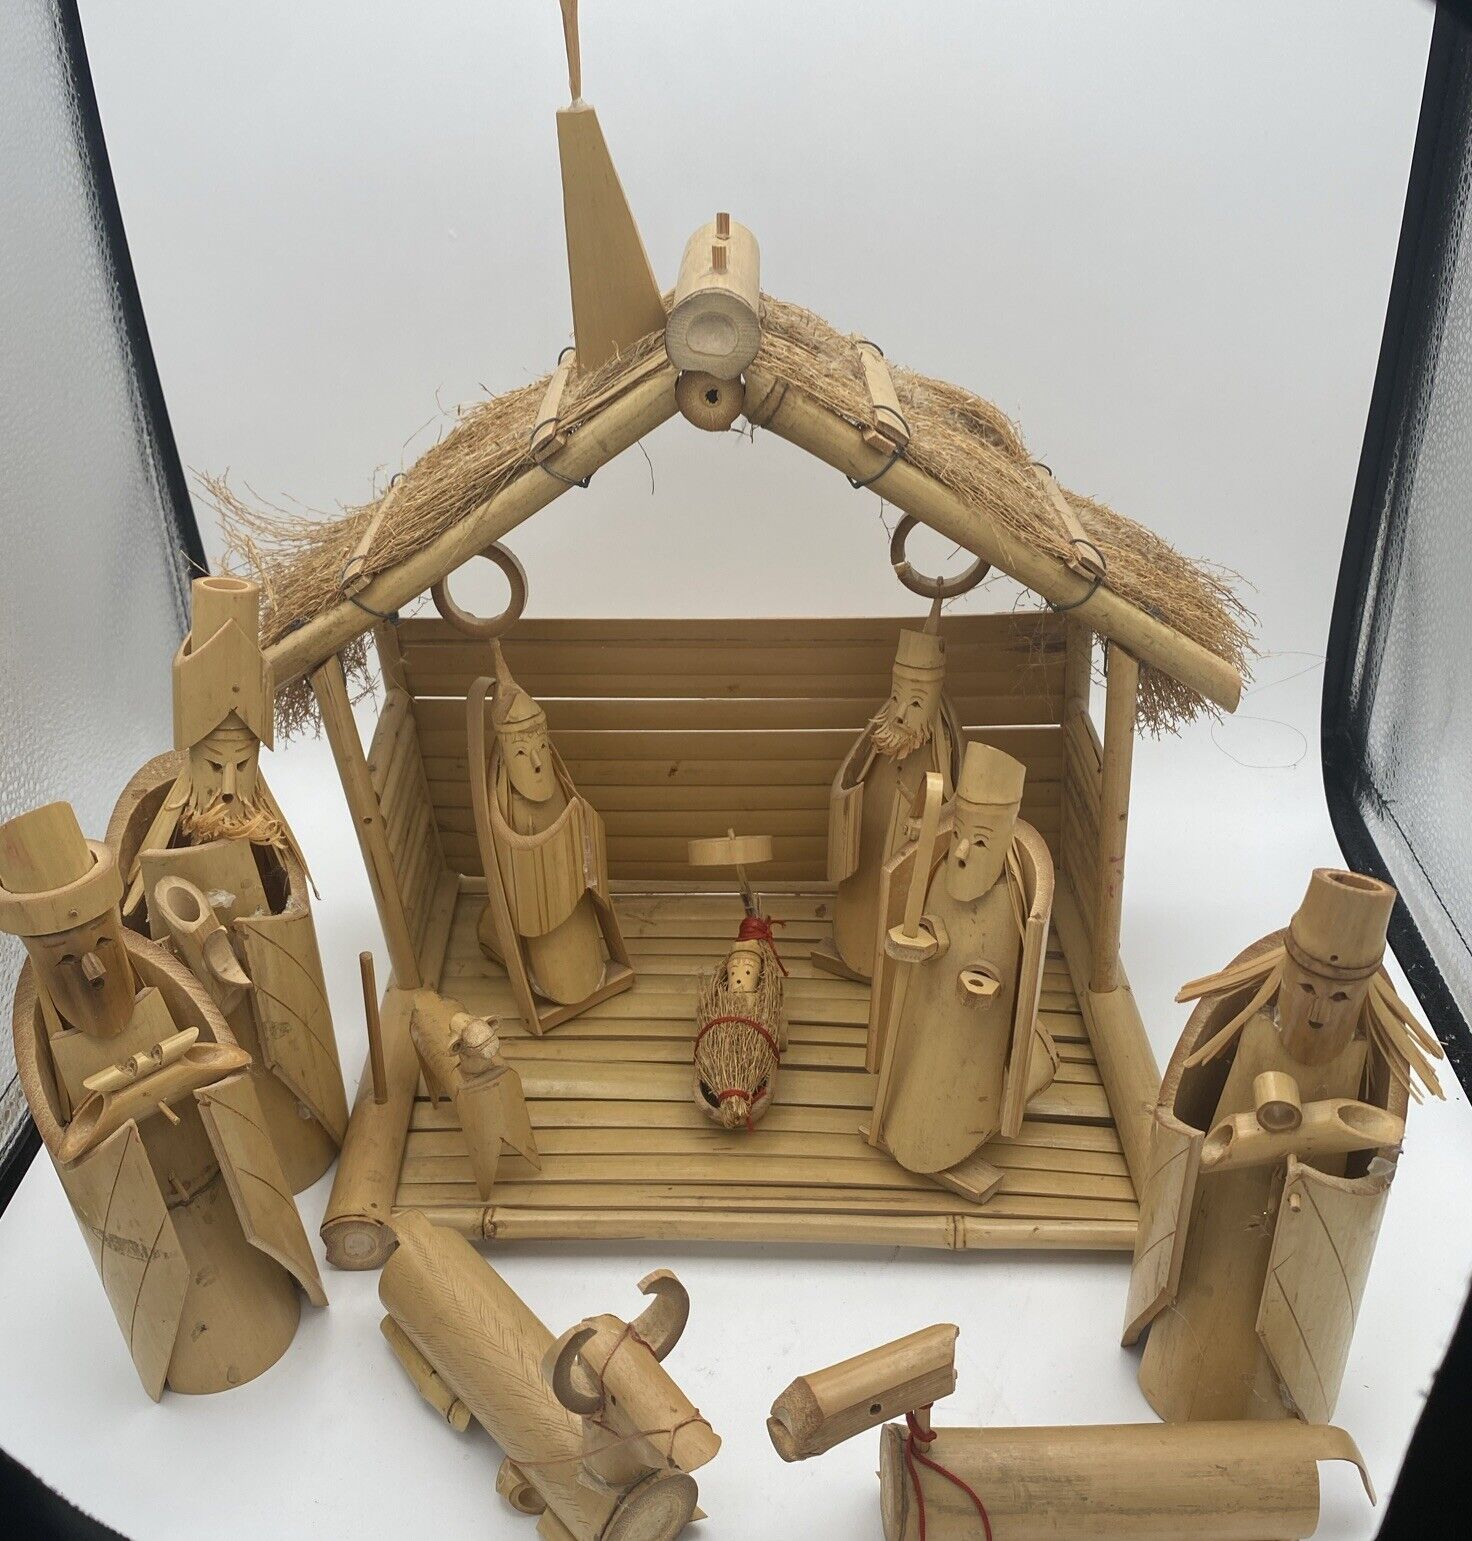 VTG Bamboo 10 Pc Nativity Scene W/ Manger handmade In Philippines READ